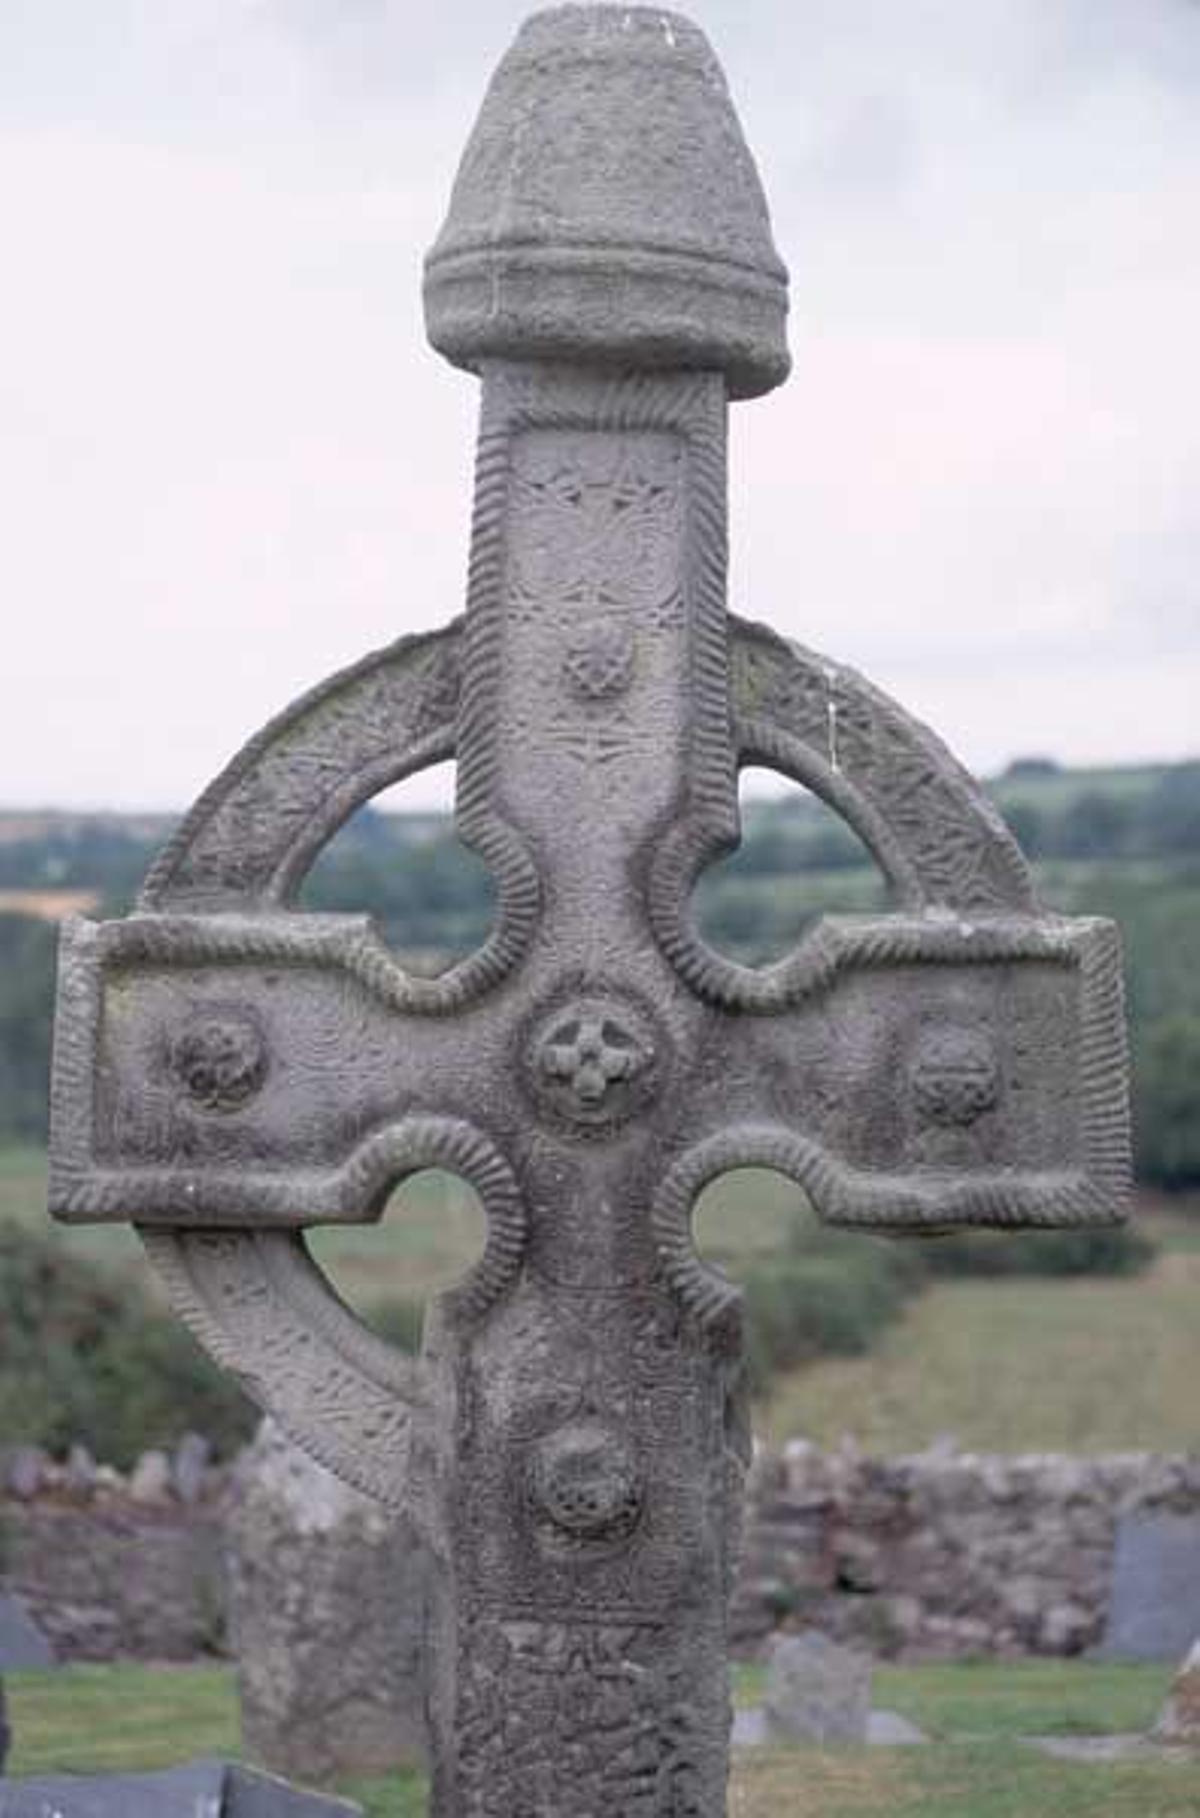 Cruces celtas talladas en piedra pertenecientes al antiguo Reino de Ossory que abarcaba el territorio entre los condados de Kilkenny y Tipperary.